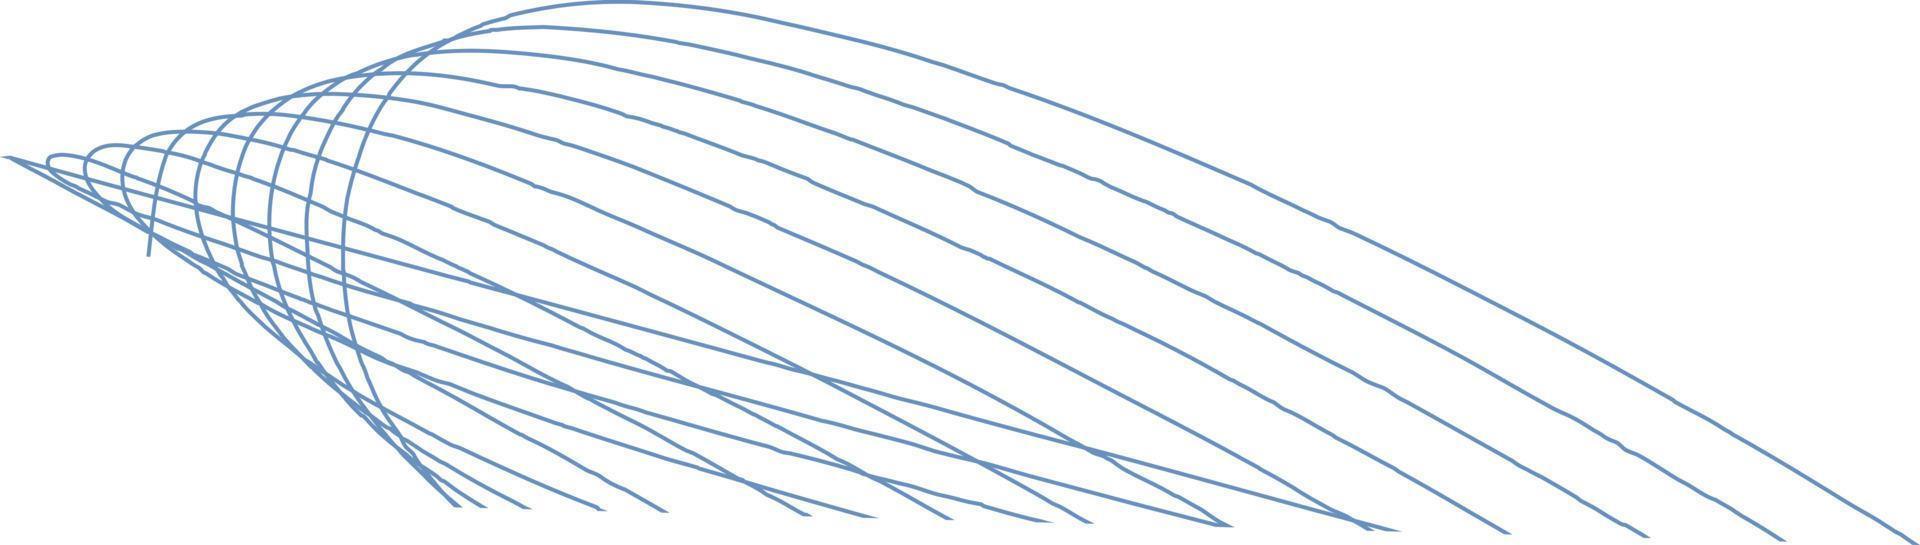 elemento de onda abstracto para el diseño. Ecualizador de pista de frecuencia digital. fondo de arte de línea estilizada. ilustración vectorial onda con líneas creadas con la herramienta de mezcla. línea ondulada curva, raya suave. vector